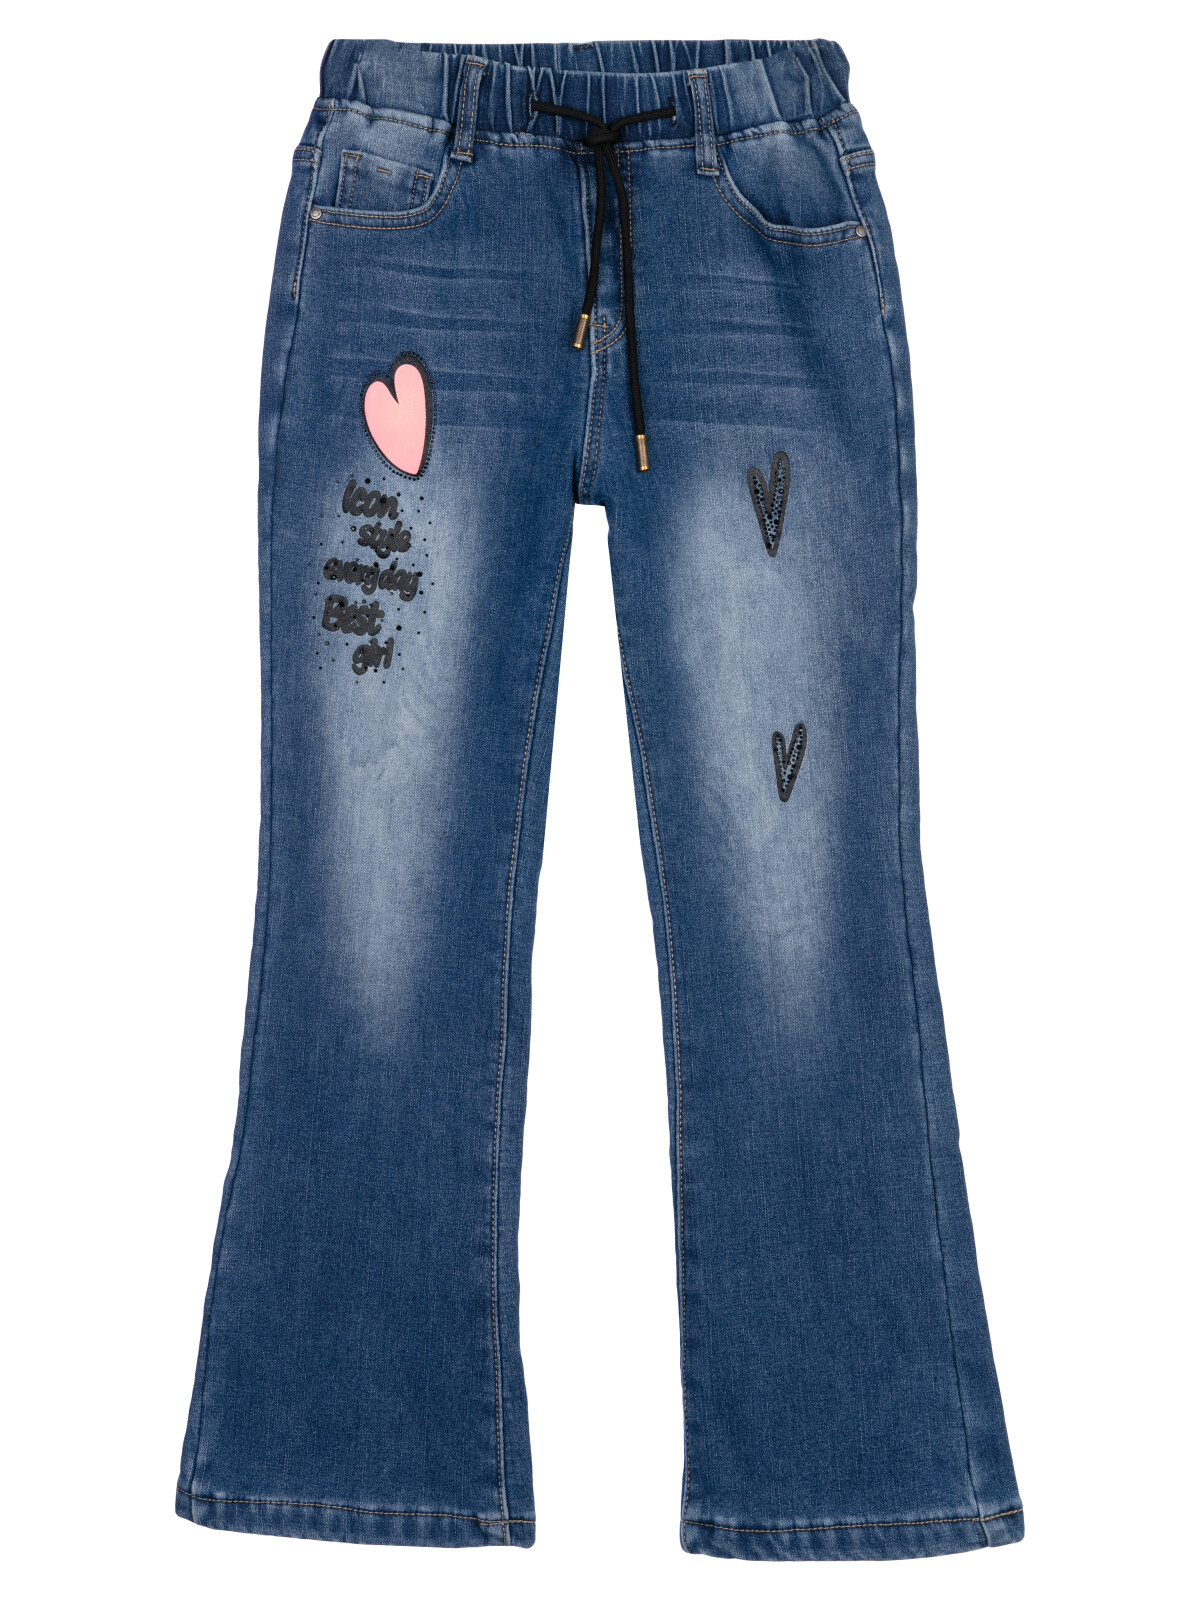 Брюки текстильные джинсовые утепленные флисом для девочек PlayToday, синий, 164